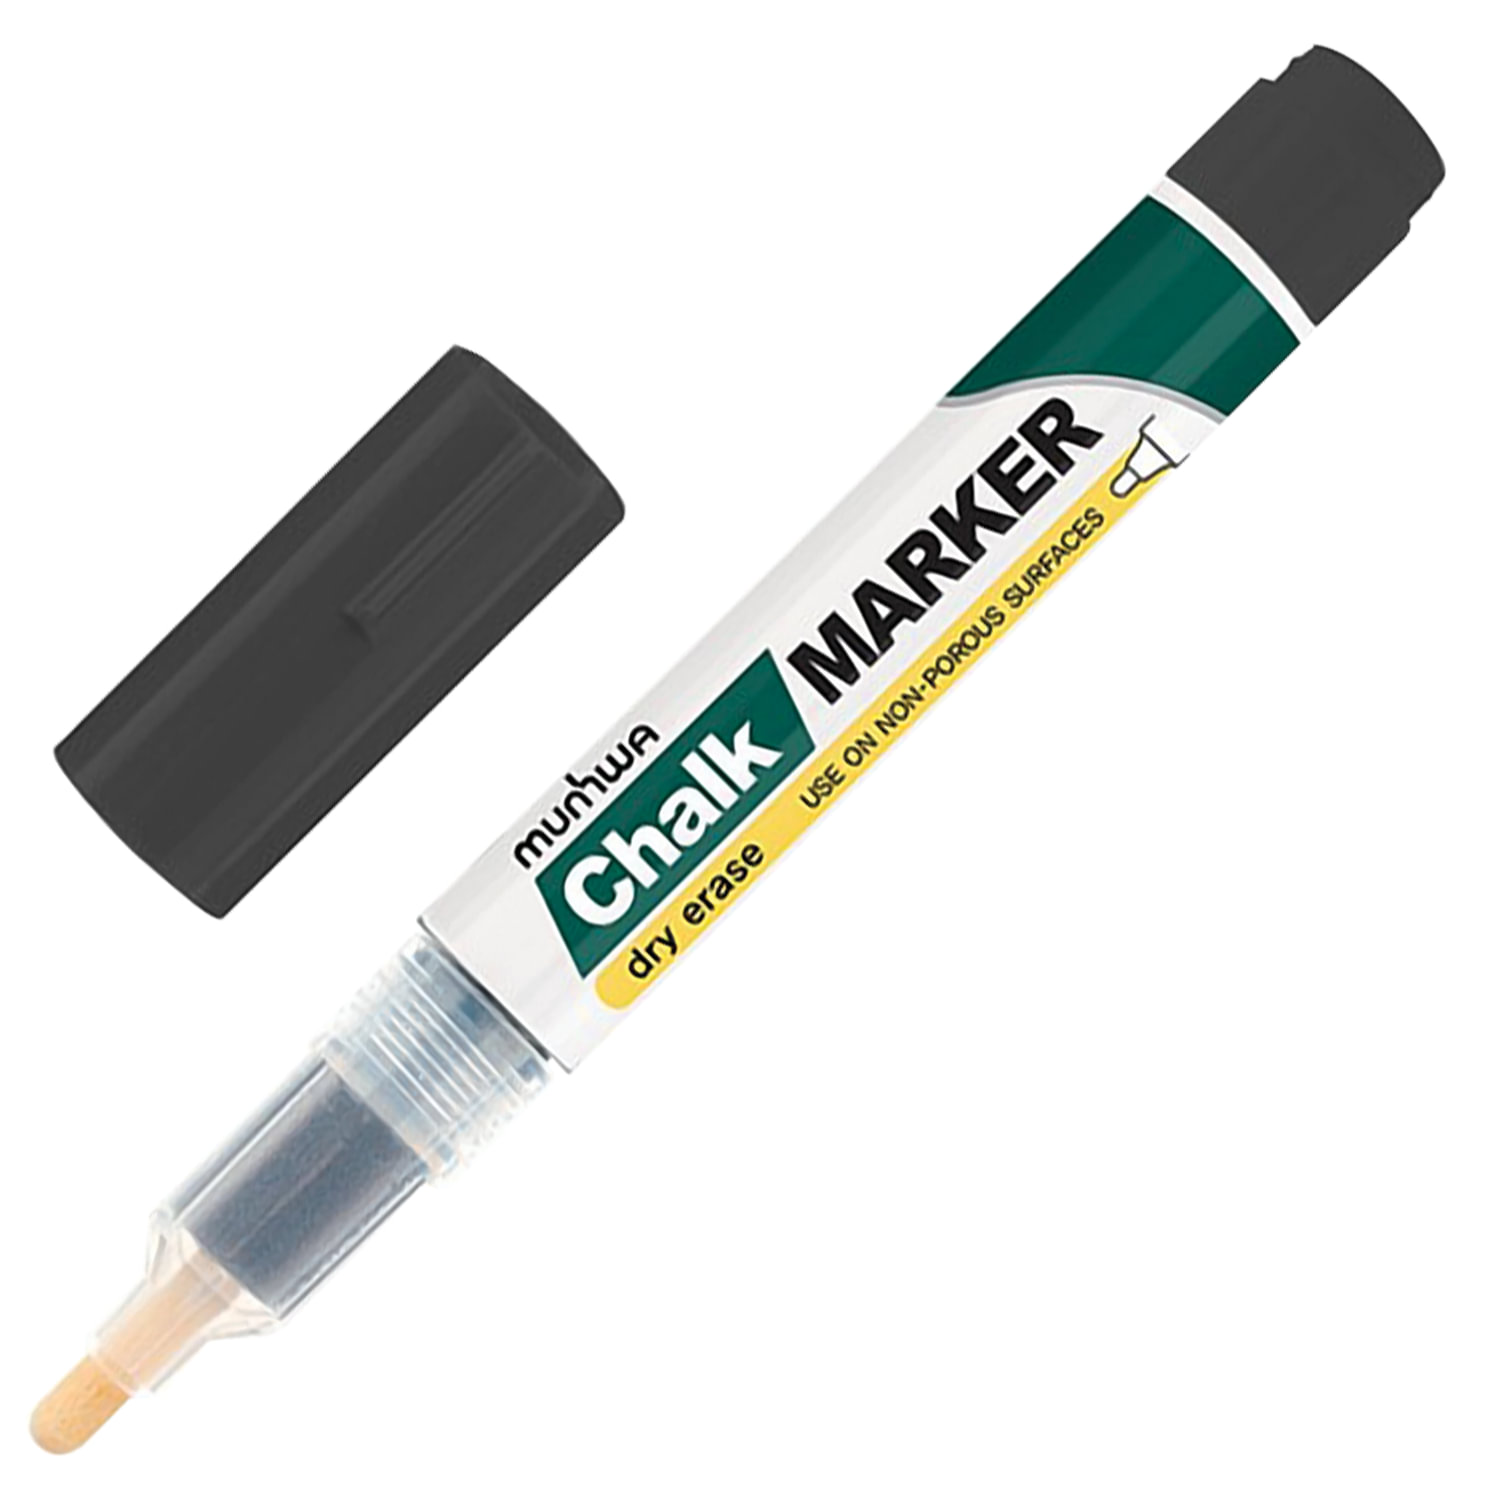 Маркер меловой MUNHWA «Chalk Marker», 3 мм, ЧЕРНЫЙ, сухостираемый, для гладких поверхностей, CM-01